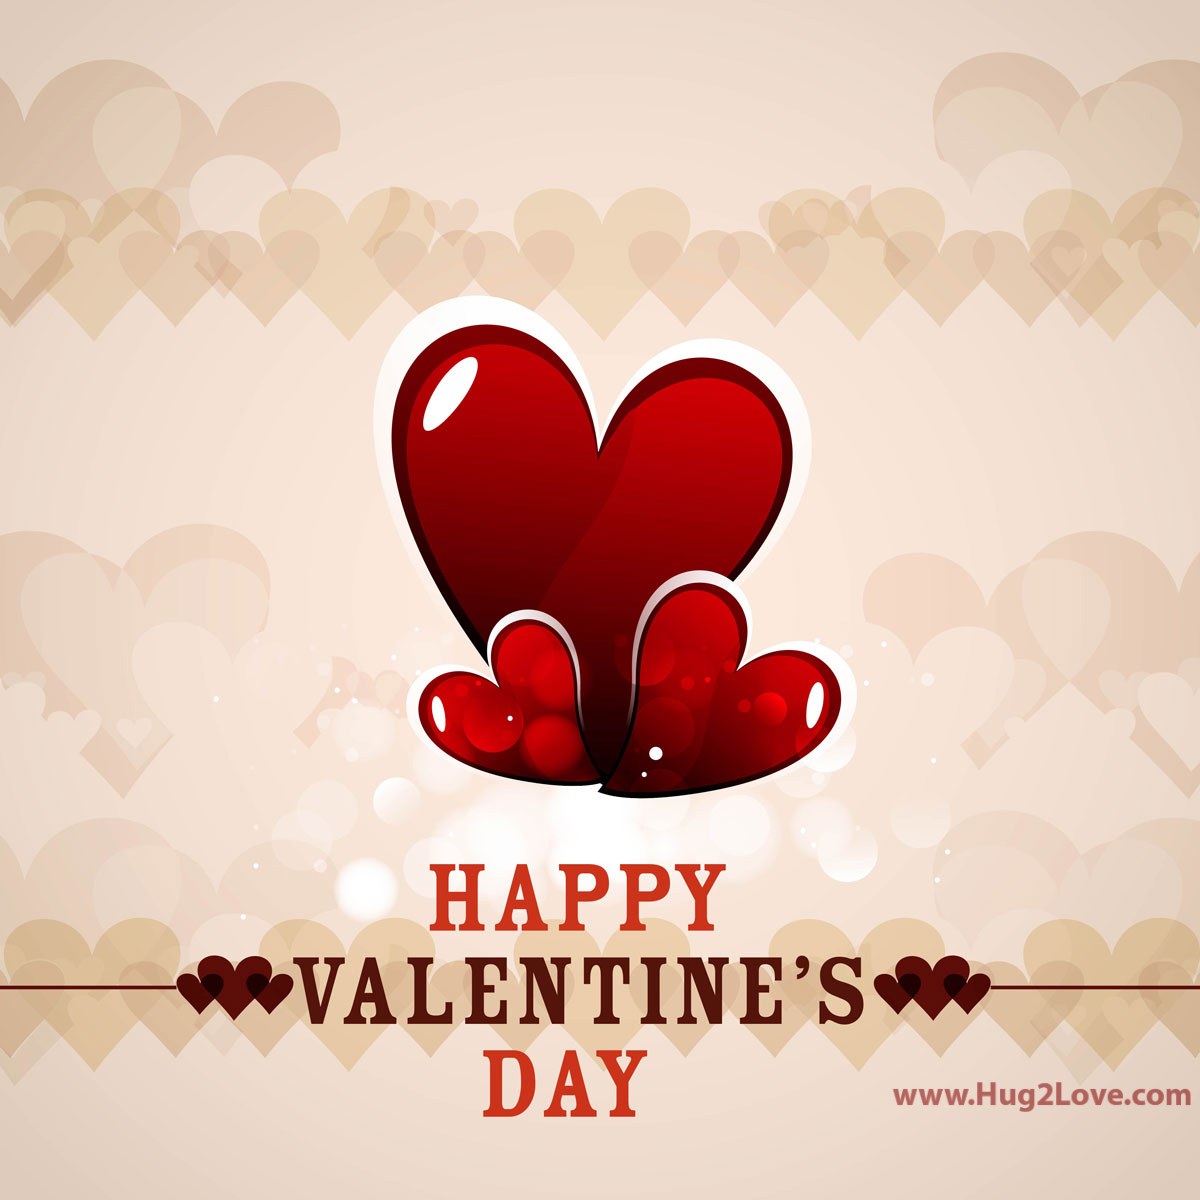 50+] Happy Valentine's Day Desktop Wallpaper - WallpaperSafari